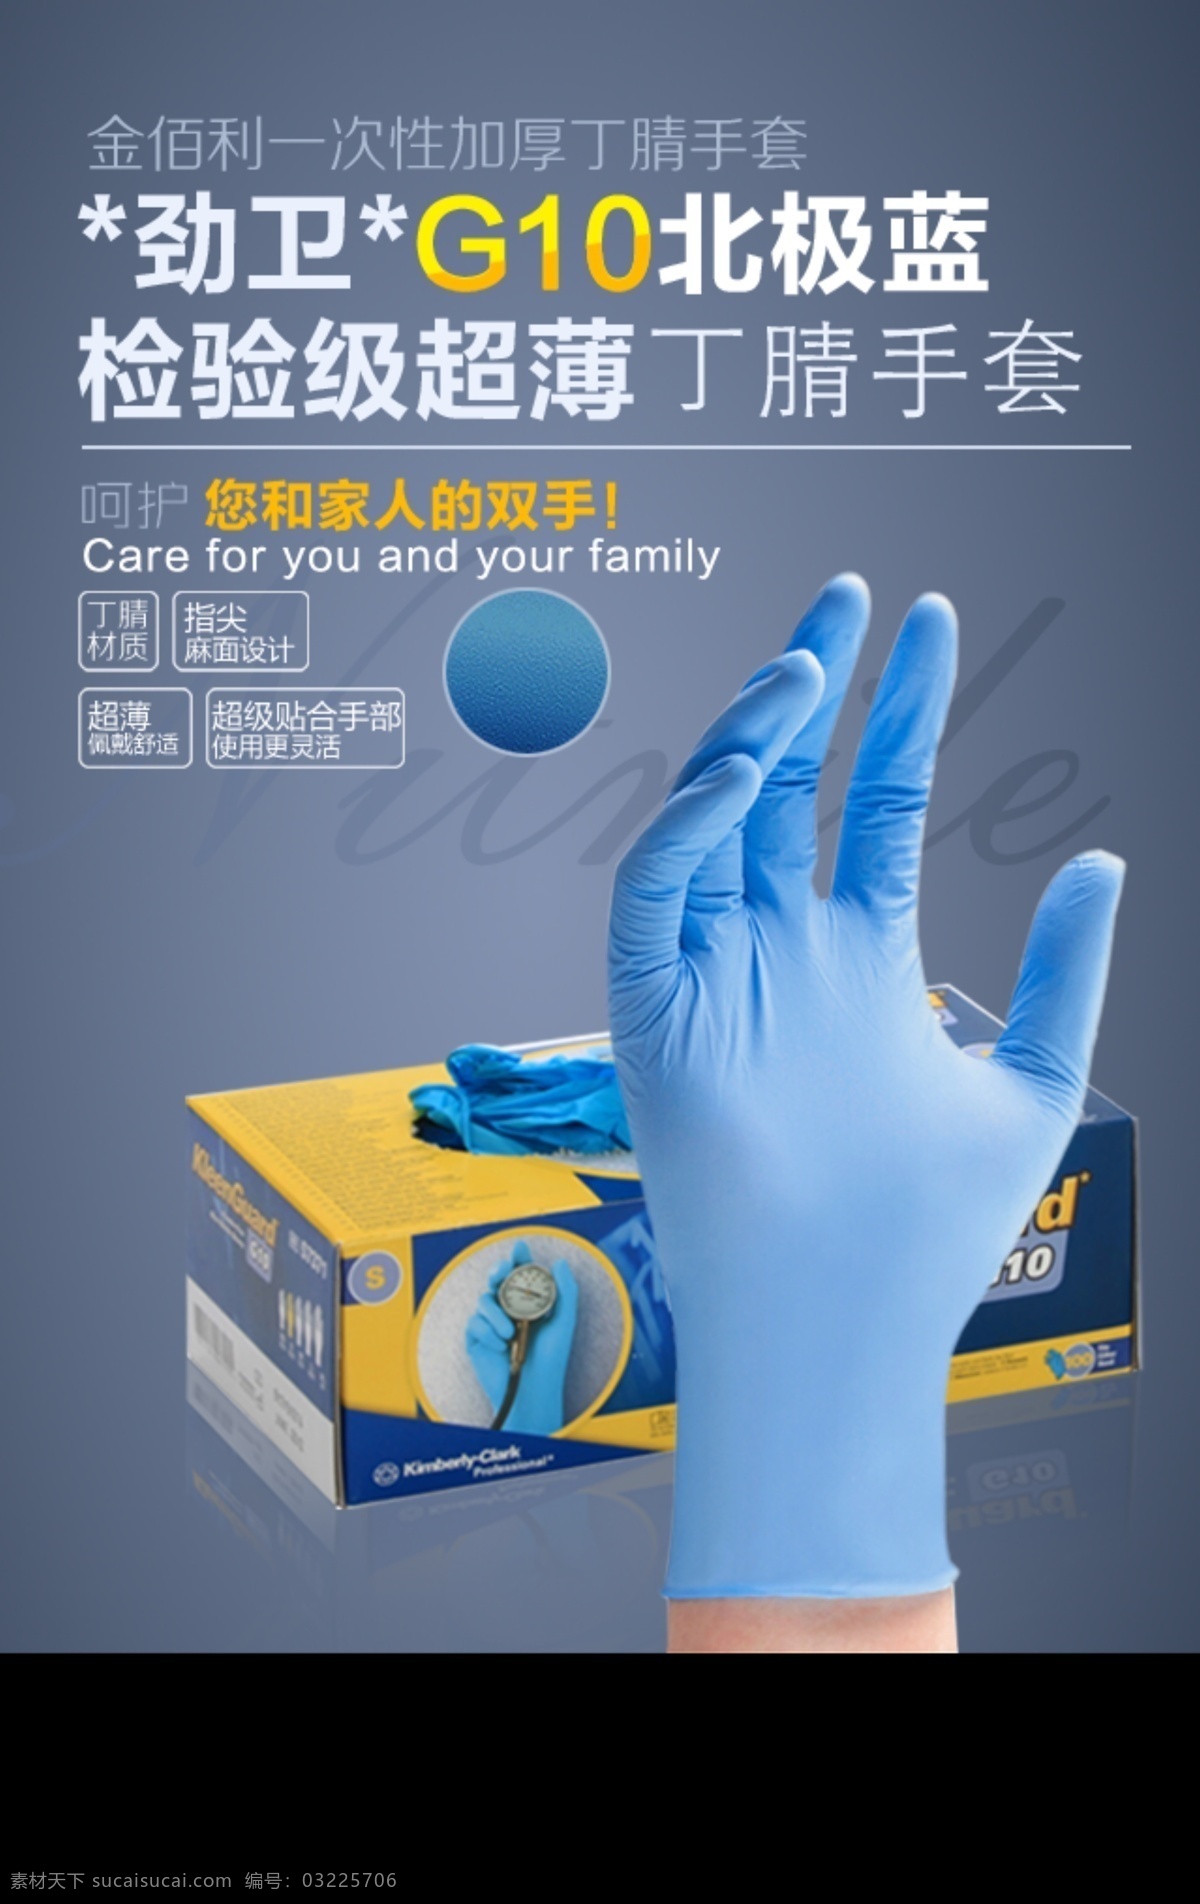 蓝色 一次性 手套 手套广告 蓝色手套 丁腈手套 检查手套 手机版广告 分层